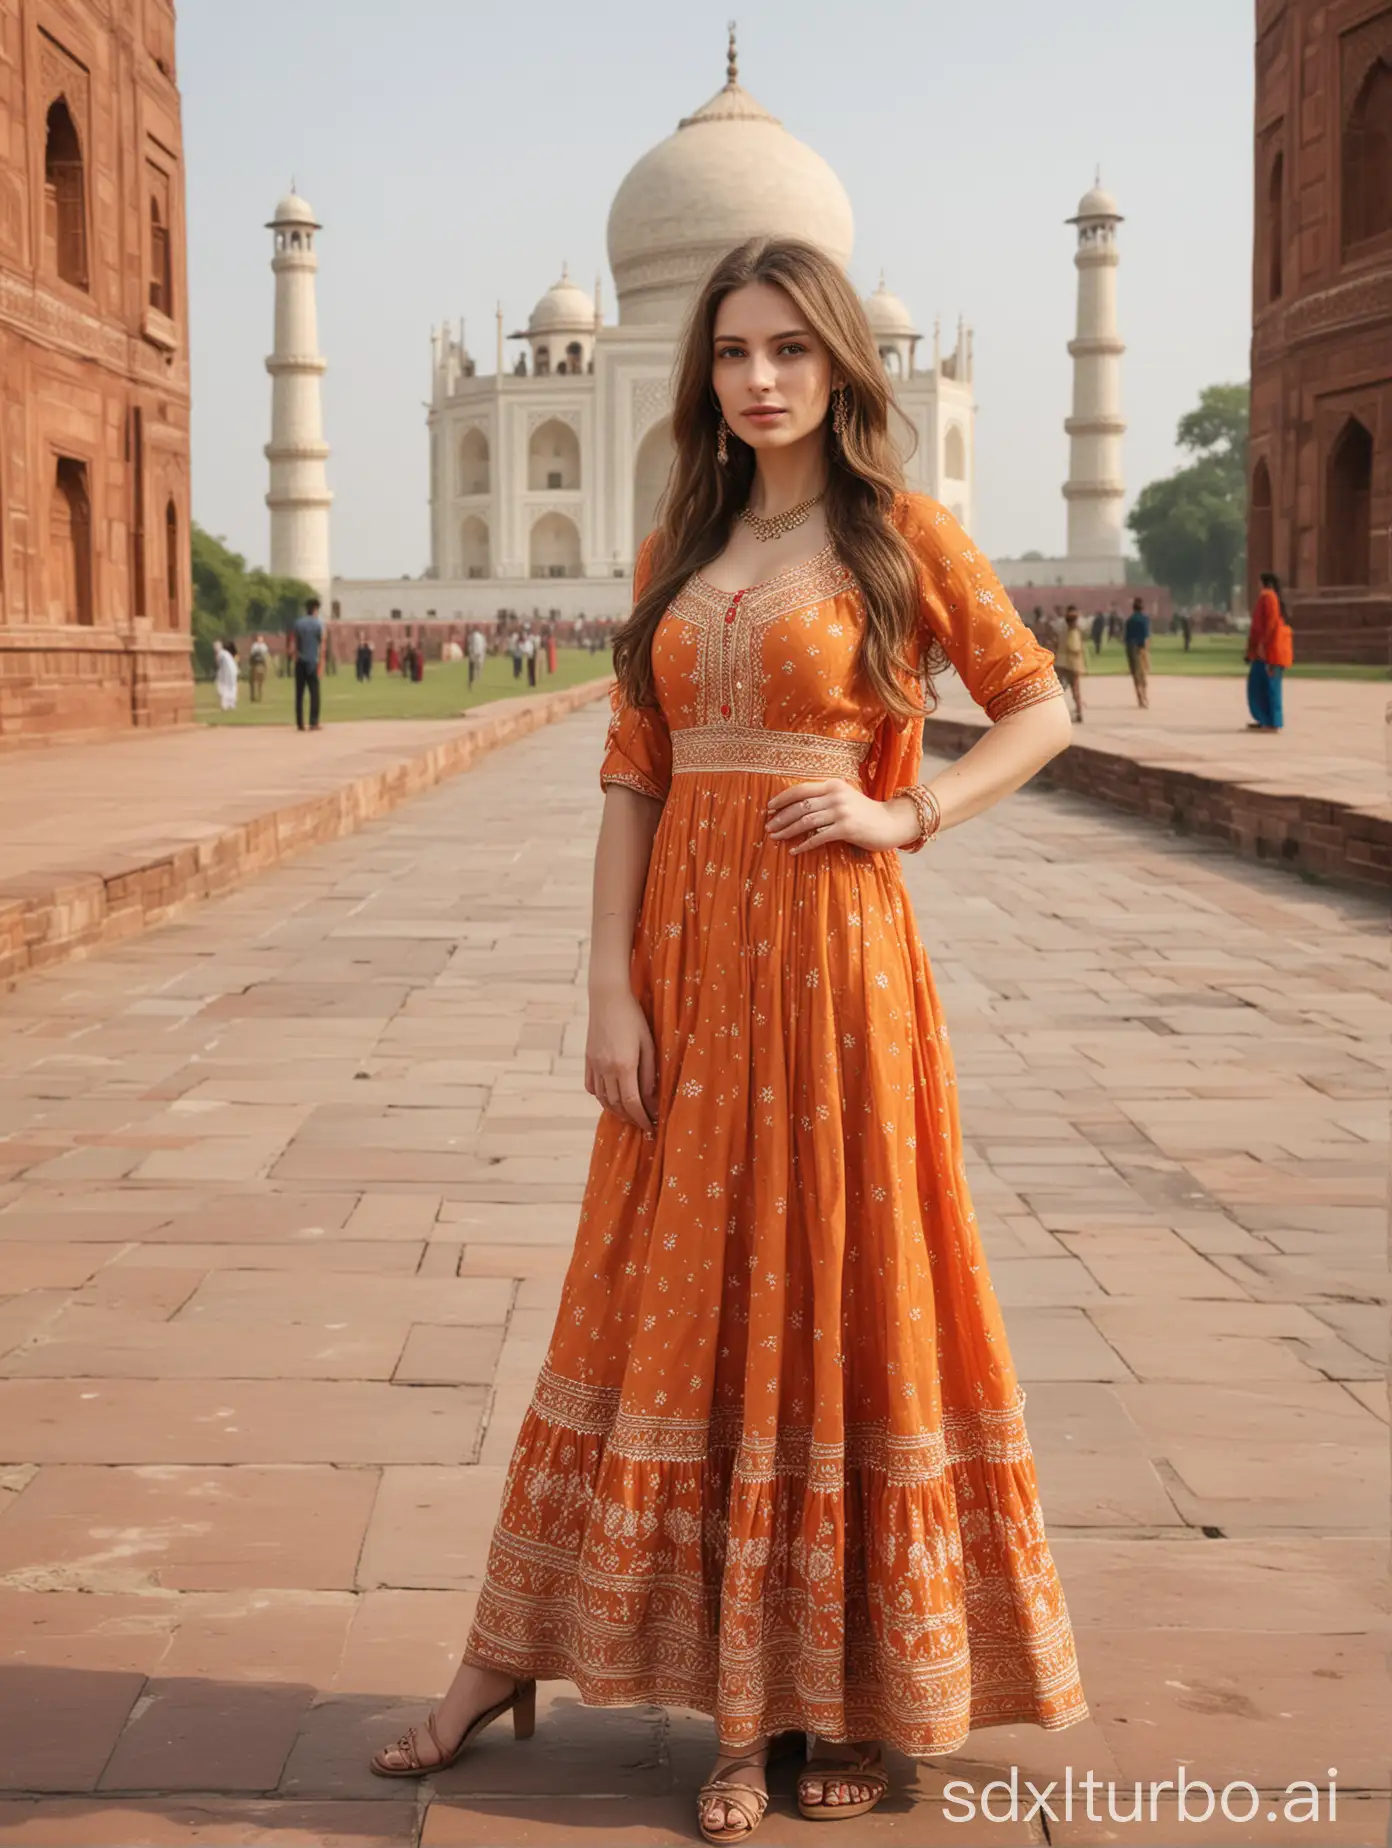 Slim-Woman-in-Elegant-Indian-Dress-Posing-at-Taj-Mahal